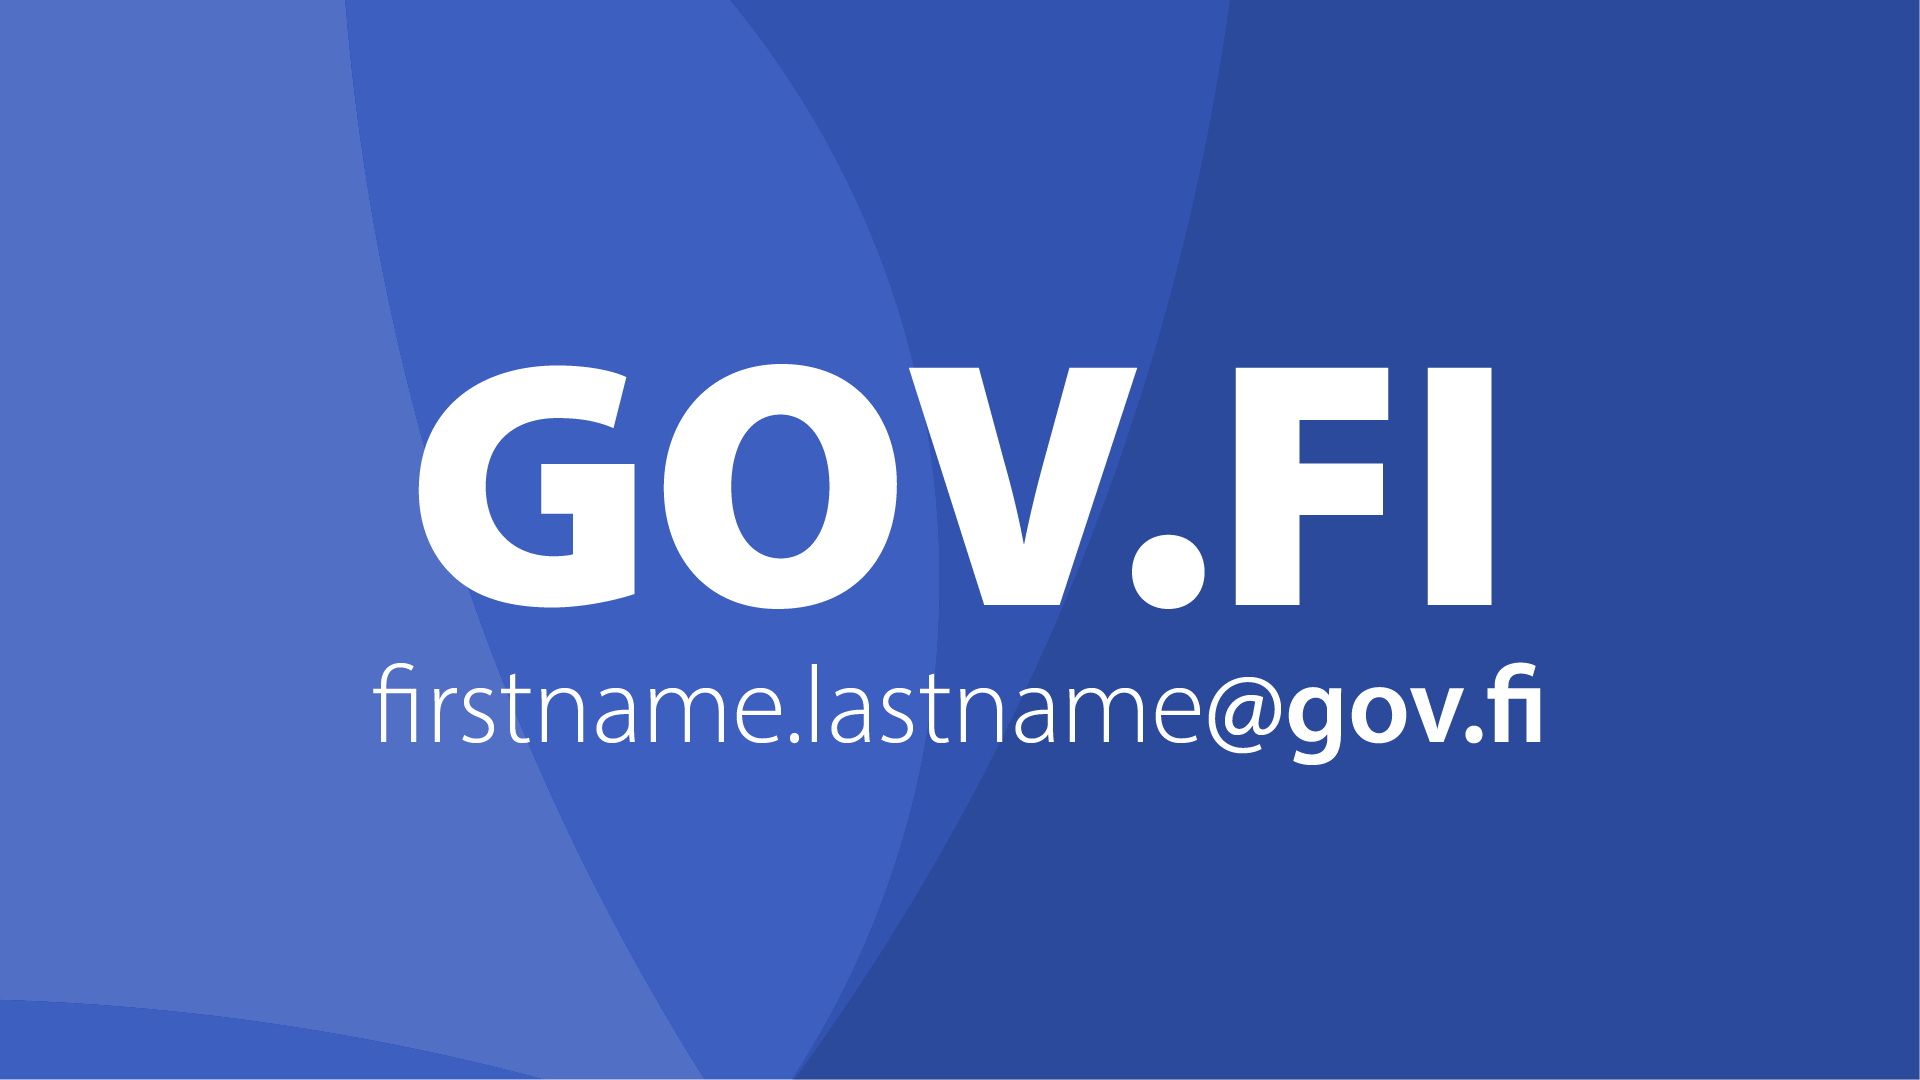 GOV.FI firstname.lastname@gov.fi